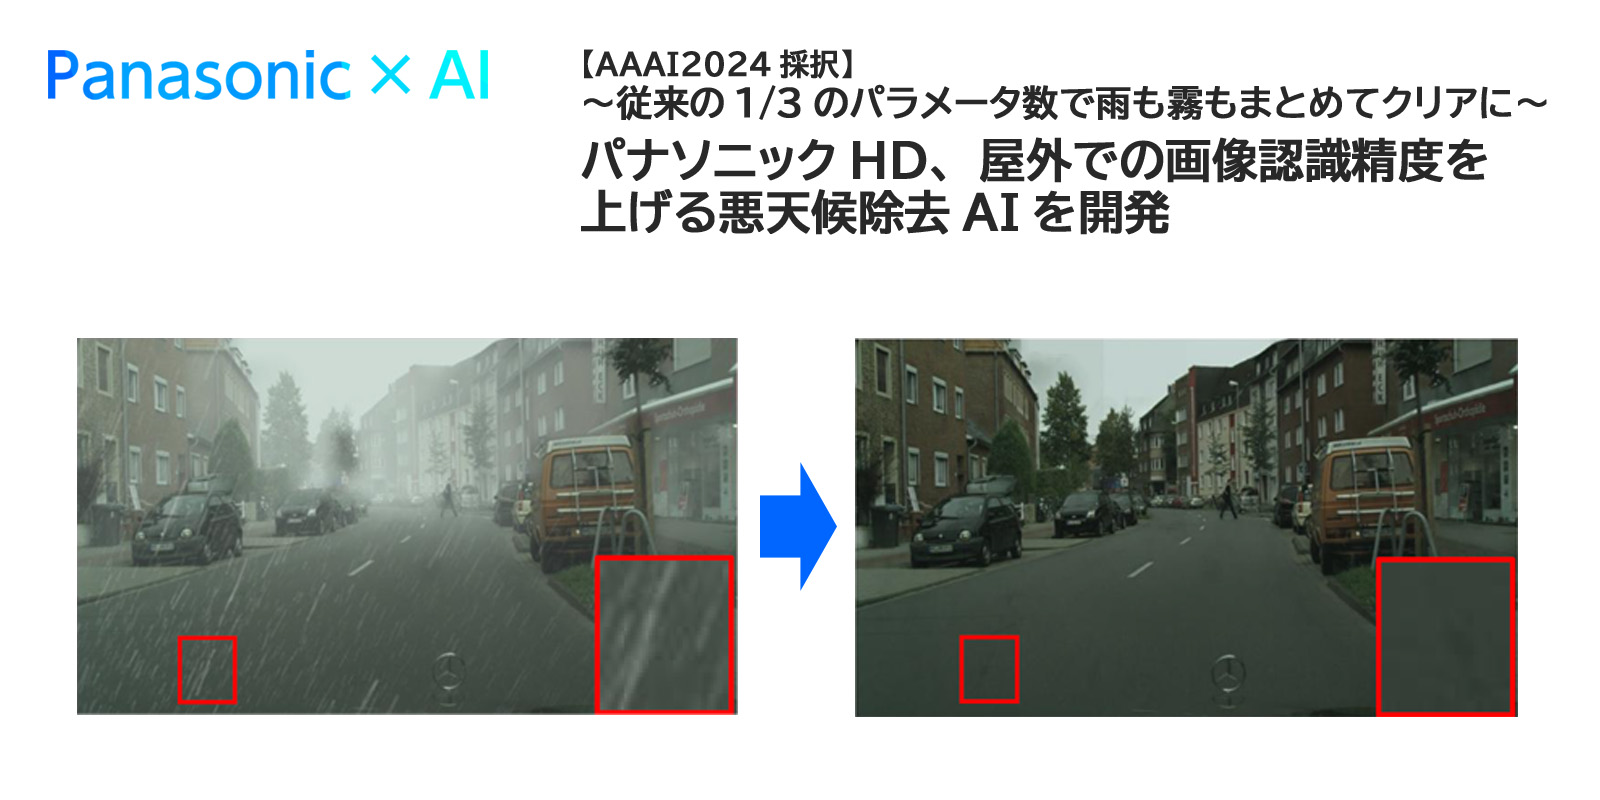 パナソニック、雨や霧などを画像から除去し屋外での画像認識精度を上げる「悪天候除去AI」を共同開発